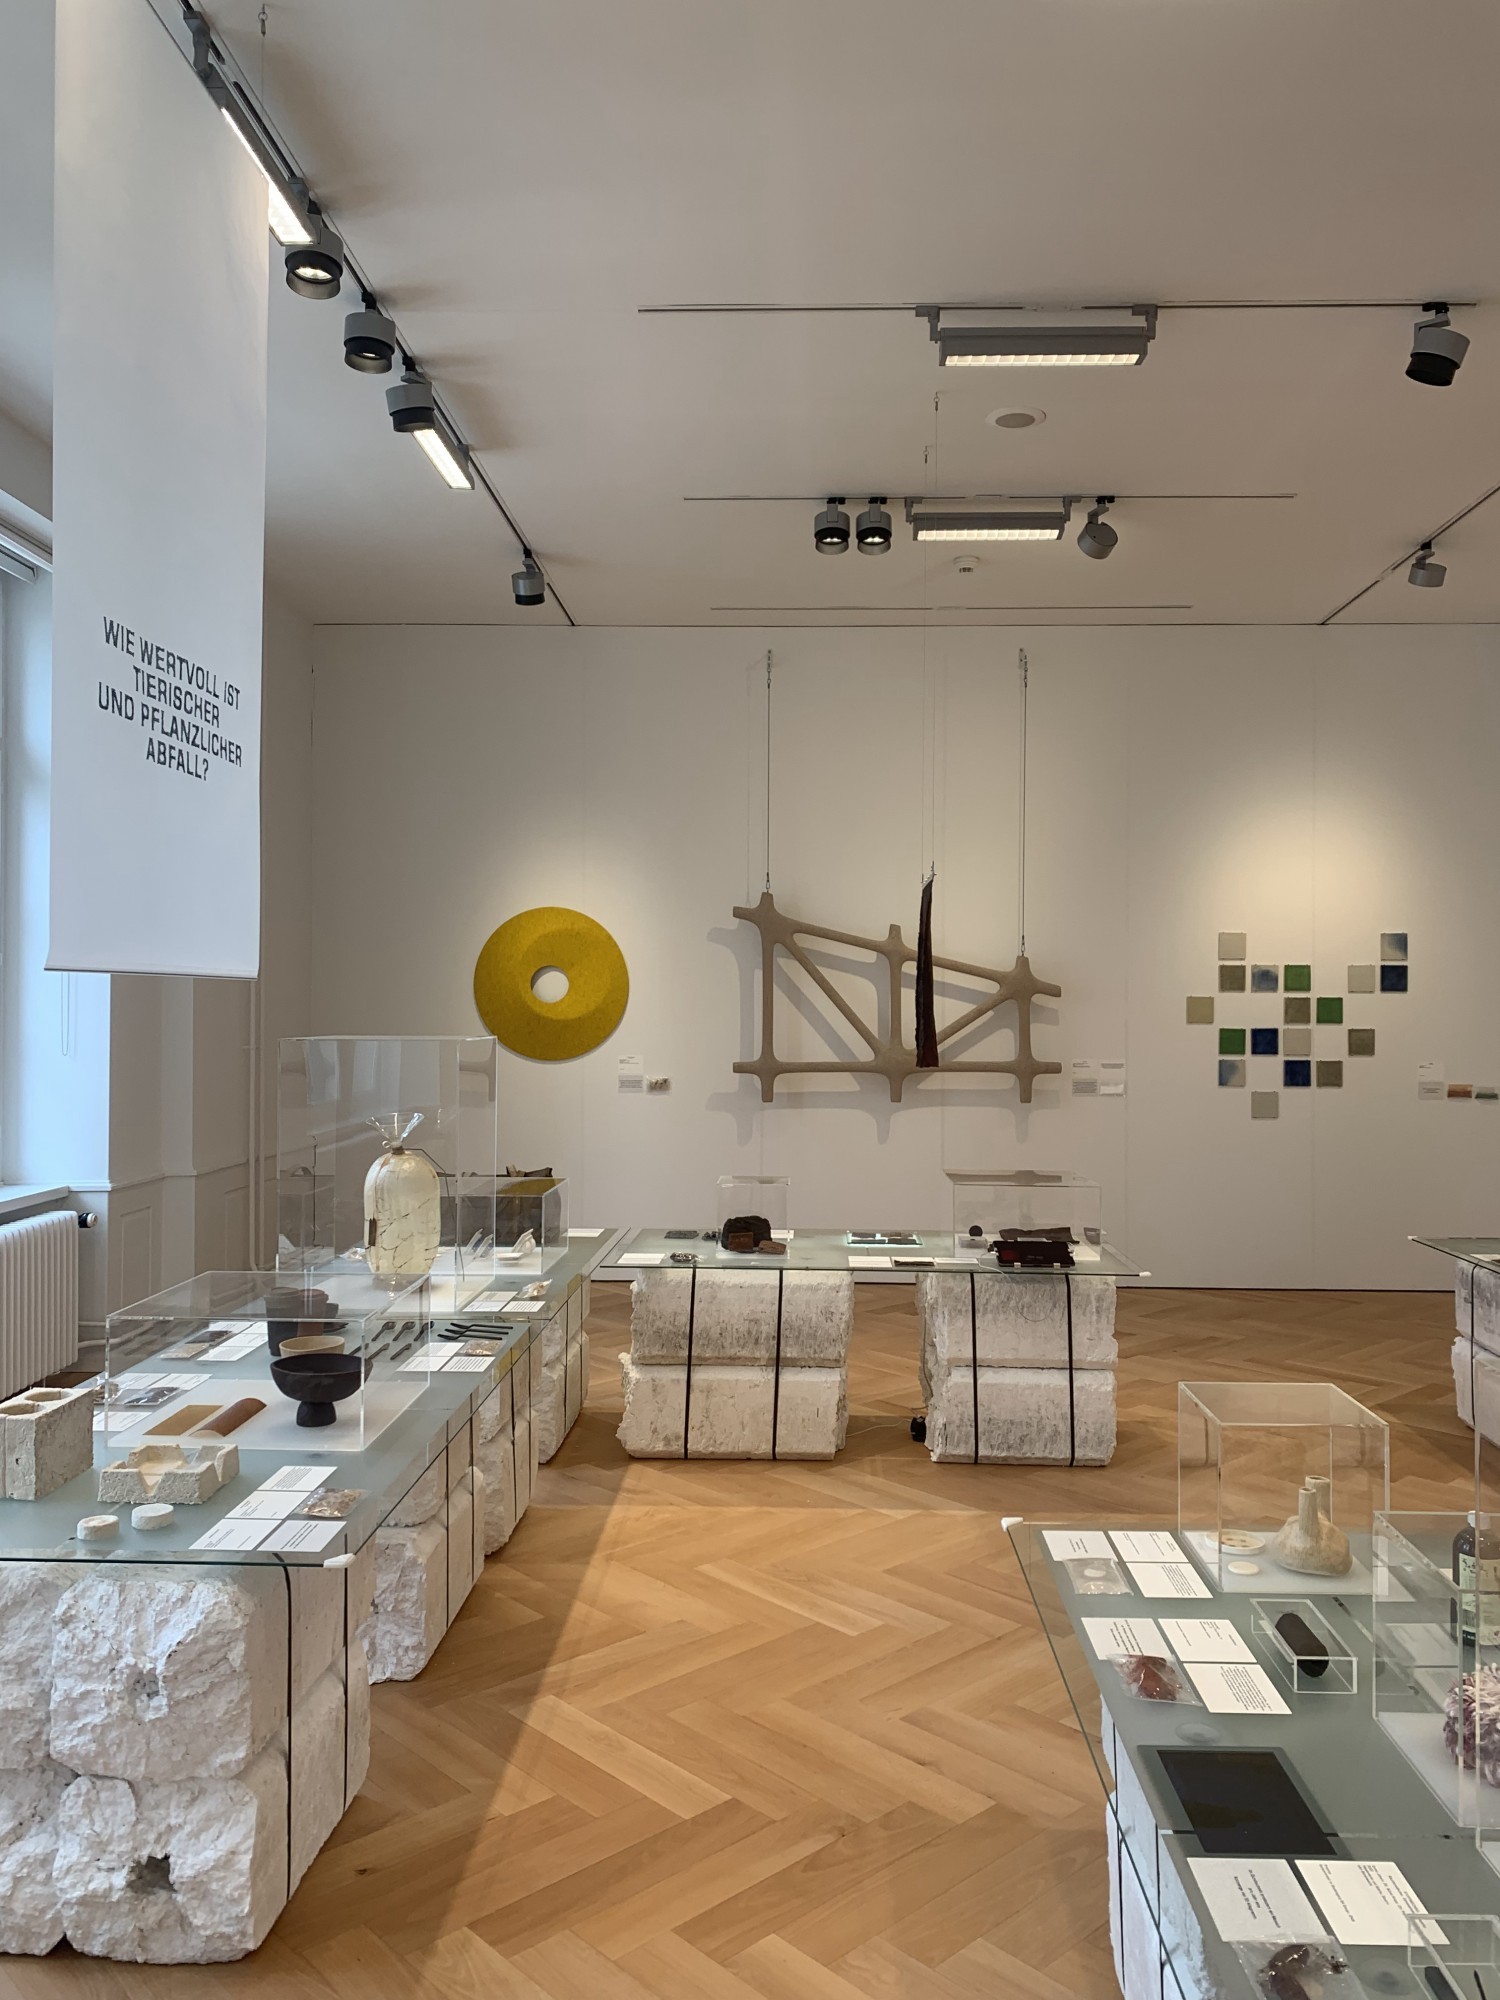 Ausstellung Gewerbemuseum Winterthur Übersicht mit Fachwerk